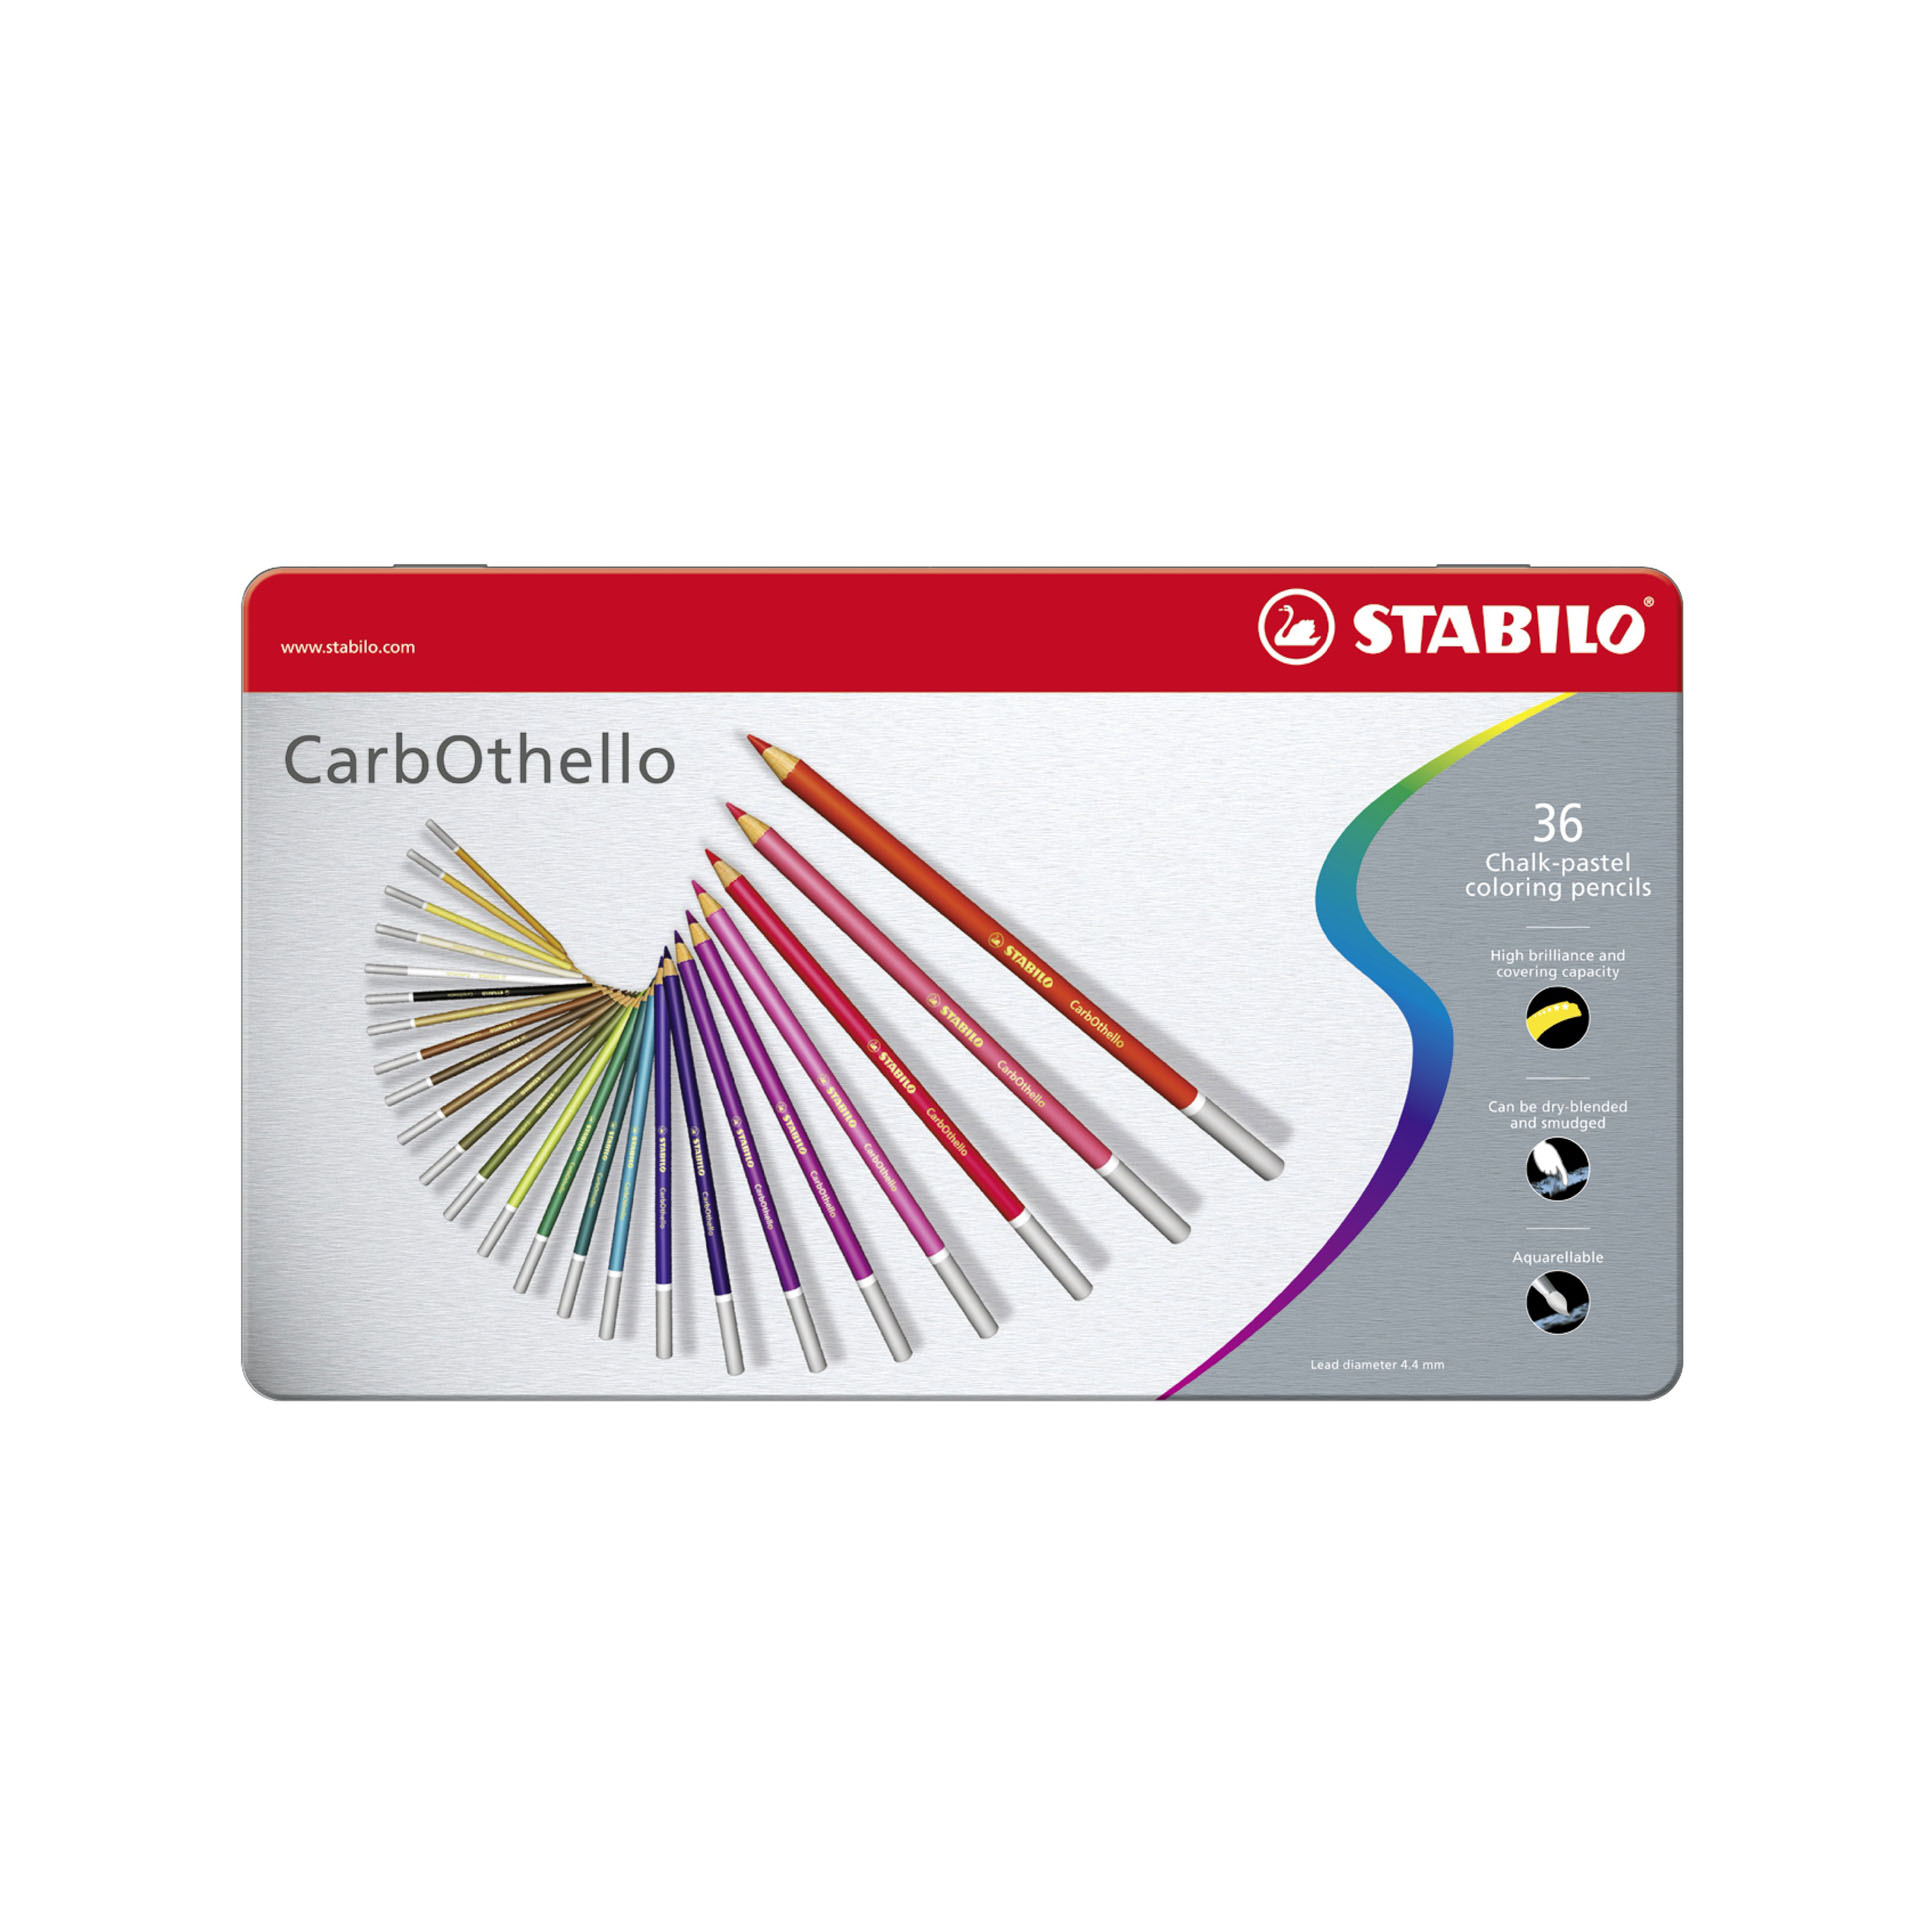 Matita Colorata Premium - Stabilo Carbothello - Scatola In Metallo Da 36 - Colori Assortiti, , large